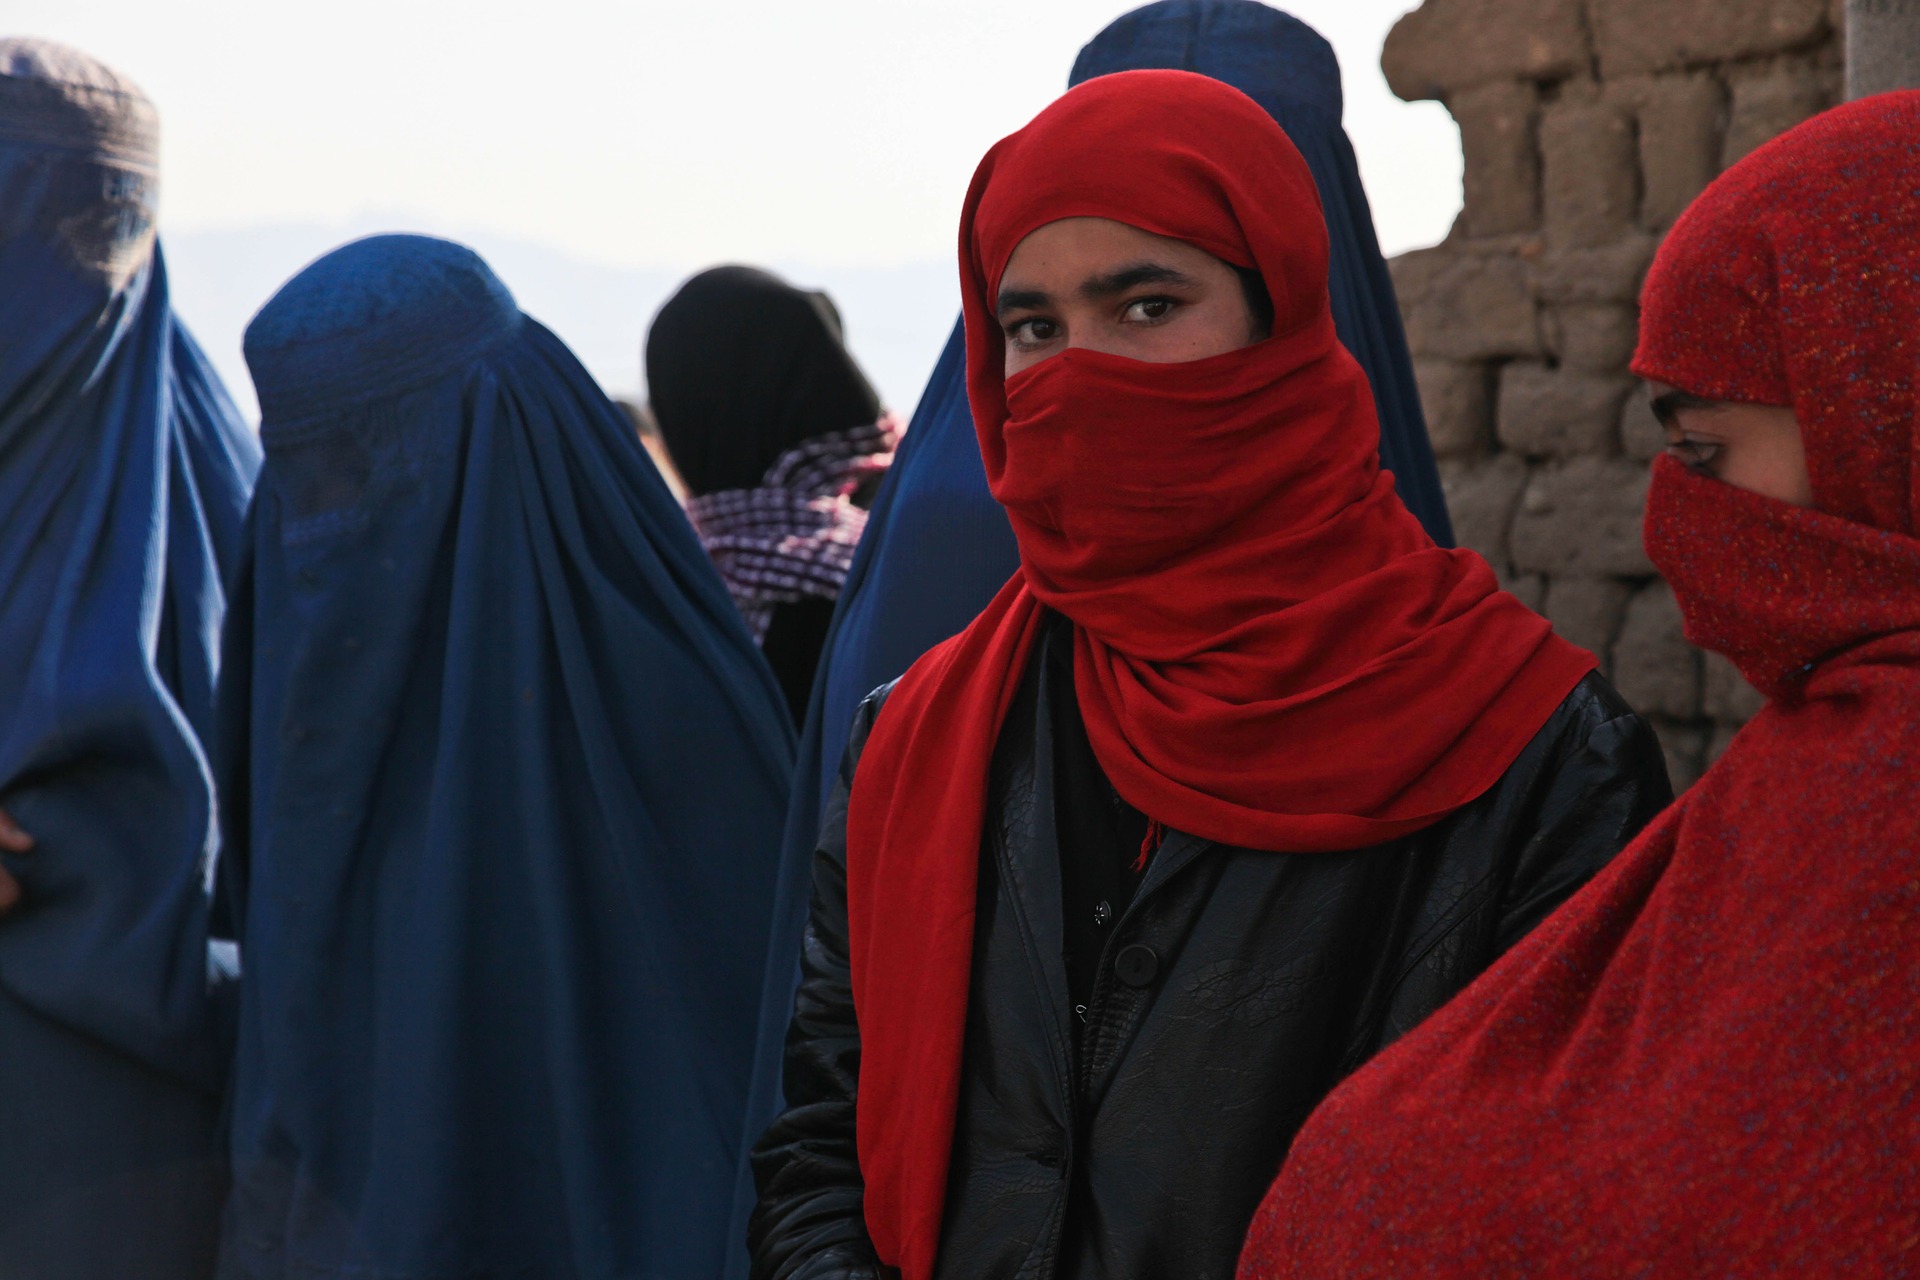 La triste sorte delle donne di Kabul ci impone di rivendicare i loro diritti e riconsiderare i nostri